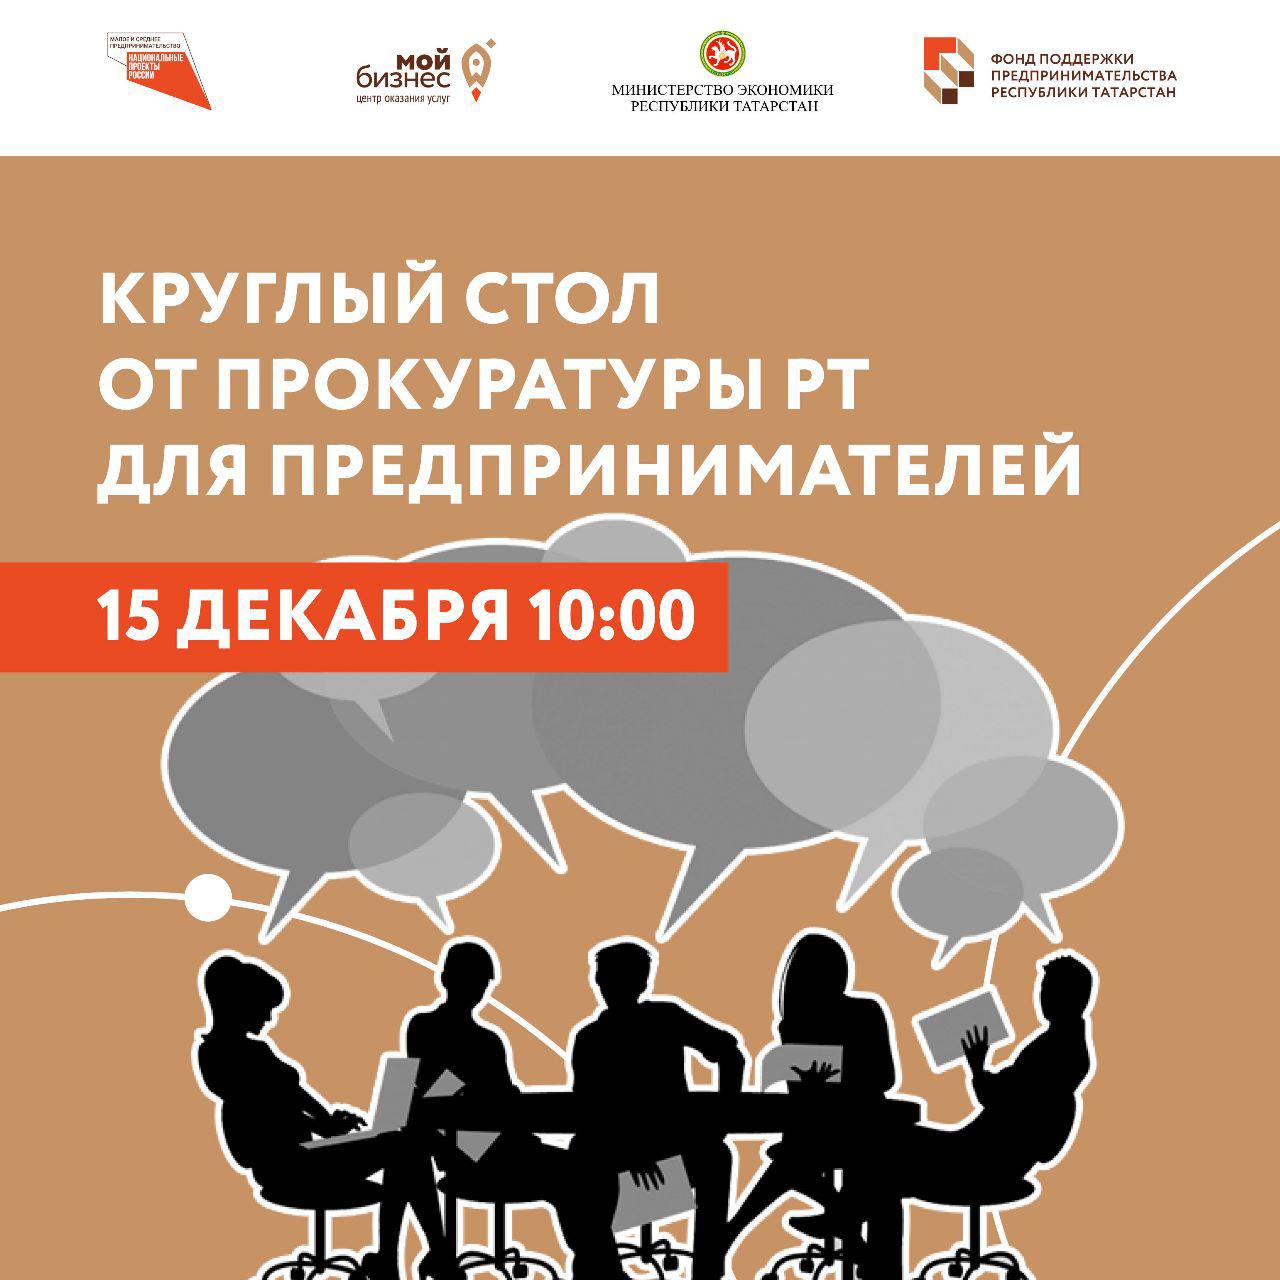 Предпринимателей Татарстана приглашают принять участие в круглом столе от Прокуратуры РТ.